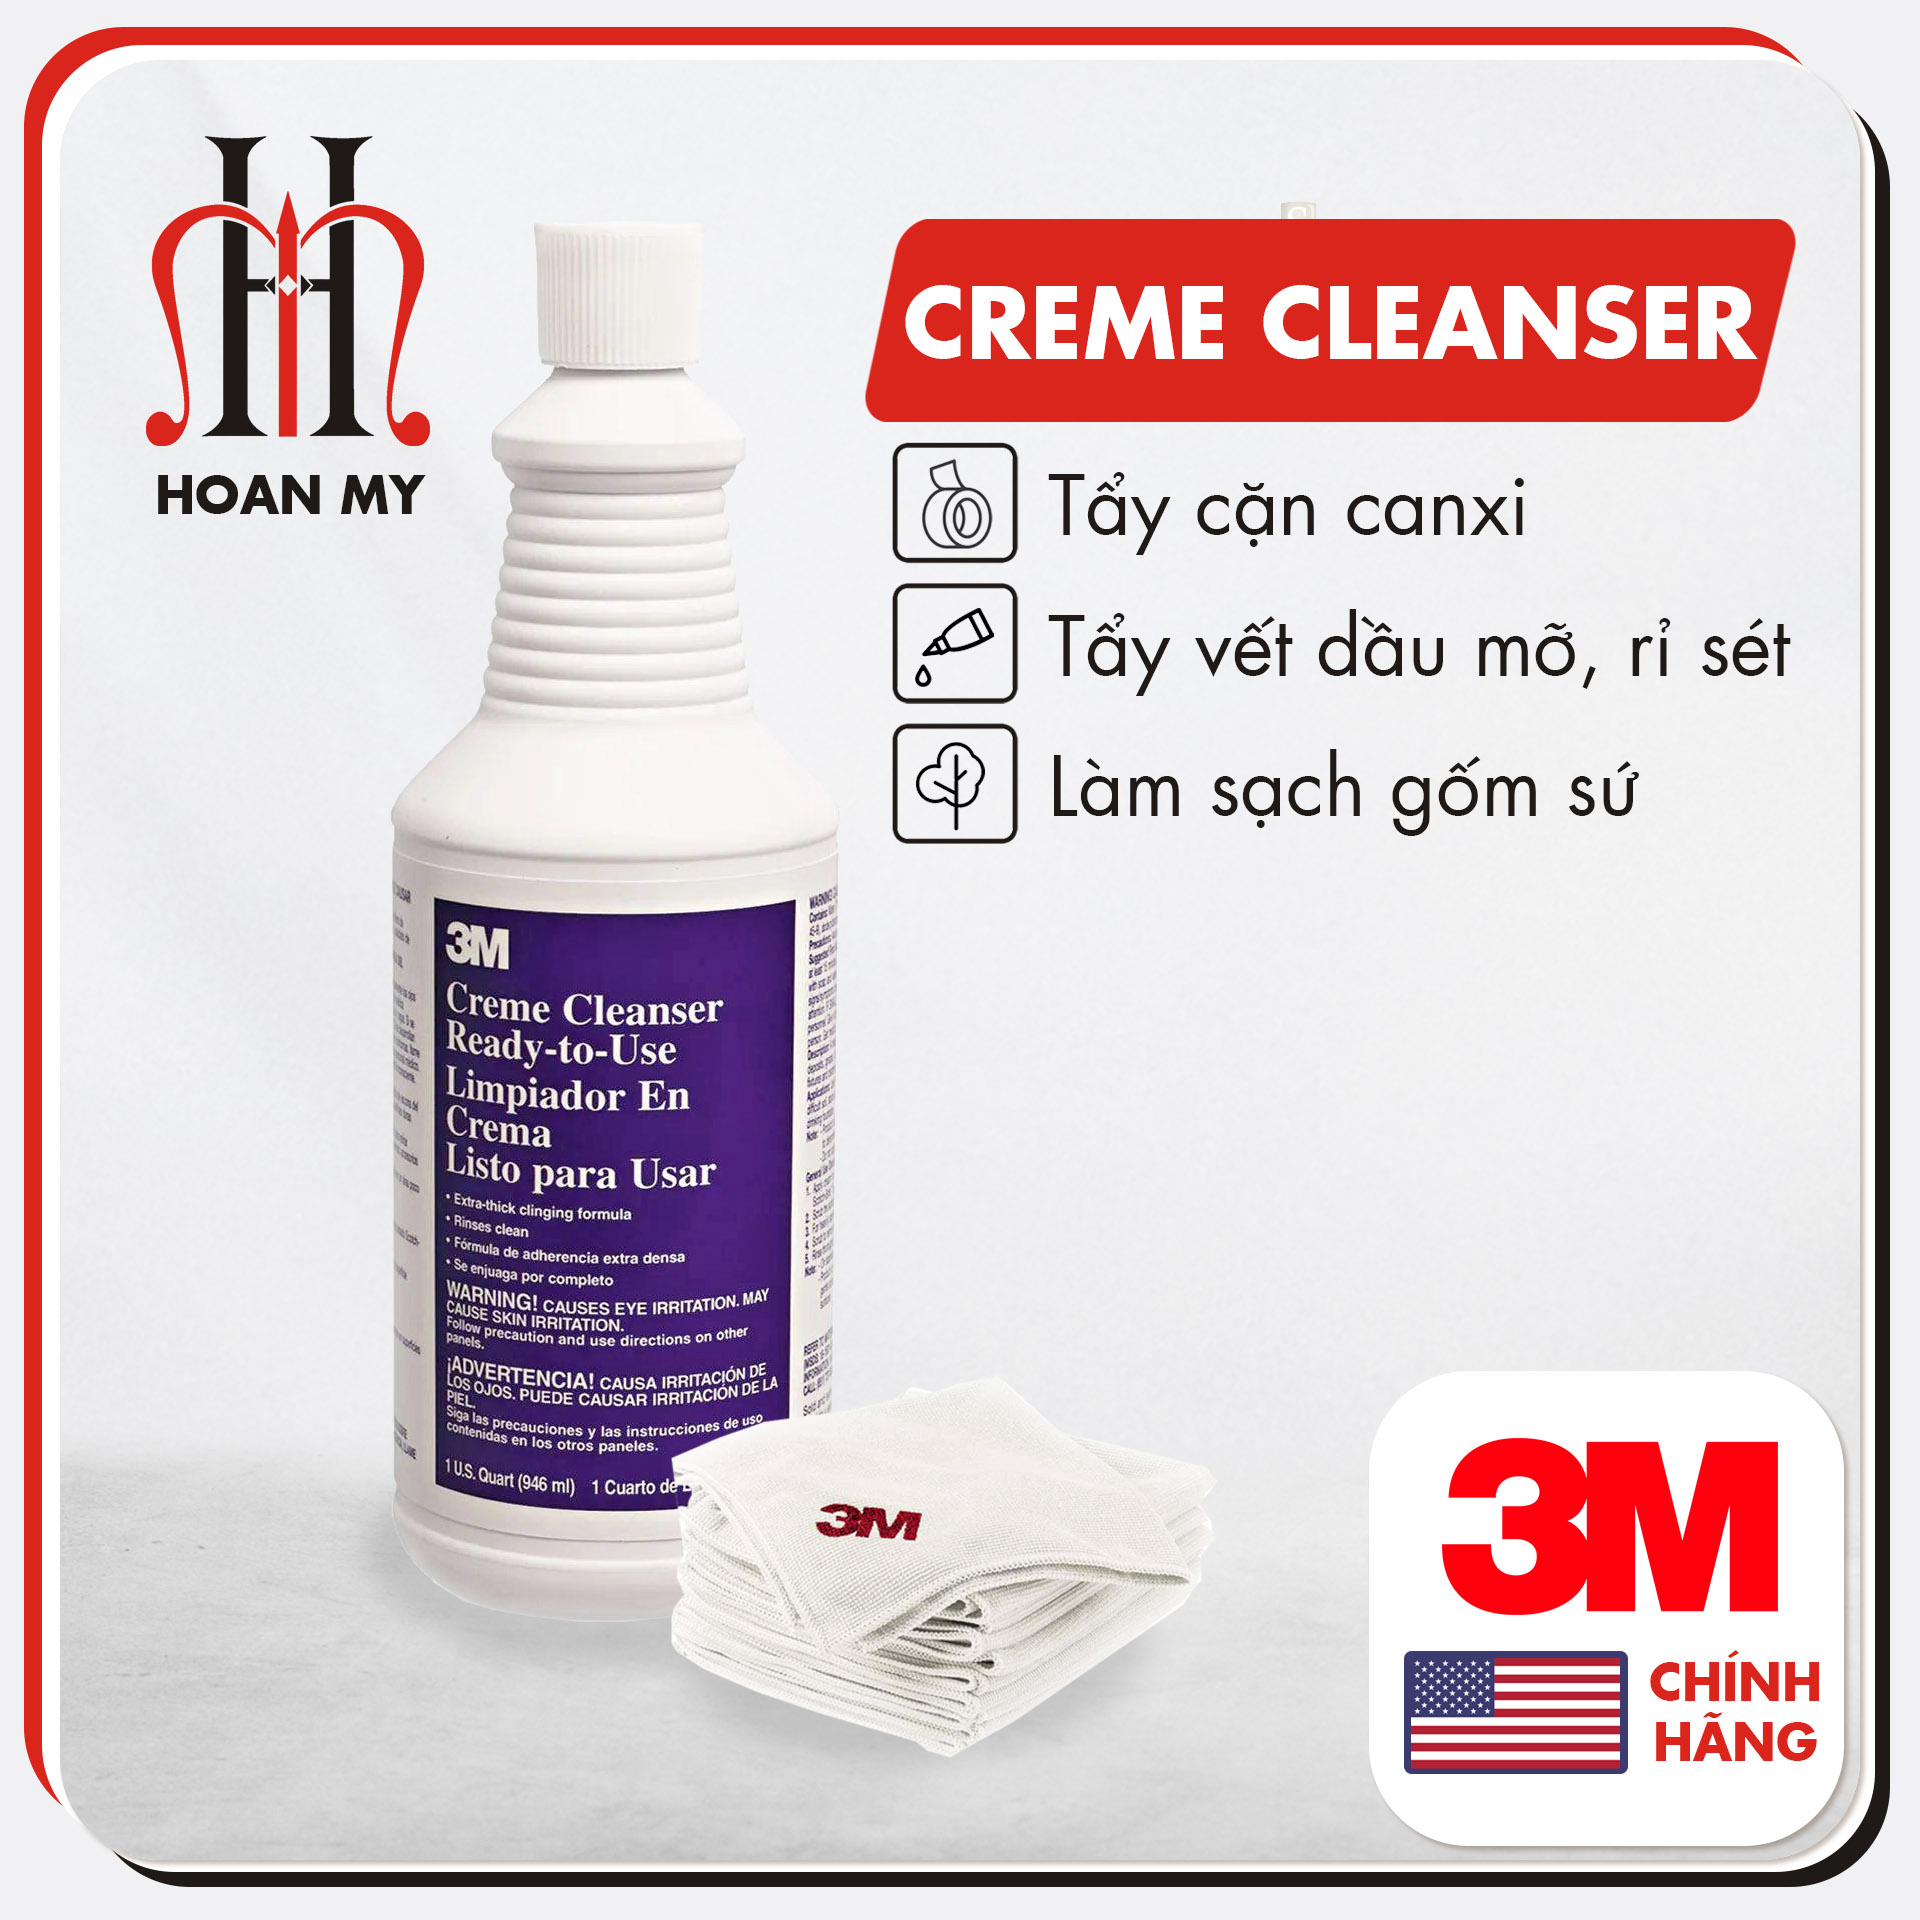 Chất tẩy cặn 3M Creme Cleanser, tẩy cặn canxi, tẩy rửa nhà tắm, tẩy vòi inox vách kính siêu sạch, an toàn tiện lợi, nhập khẩu chính hãng 3M - Mỹ